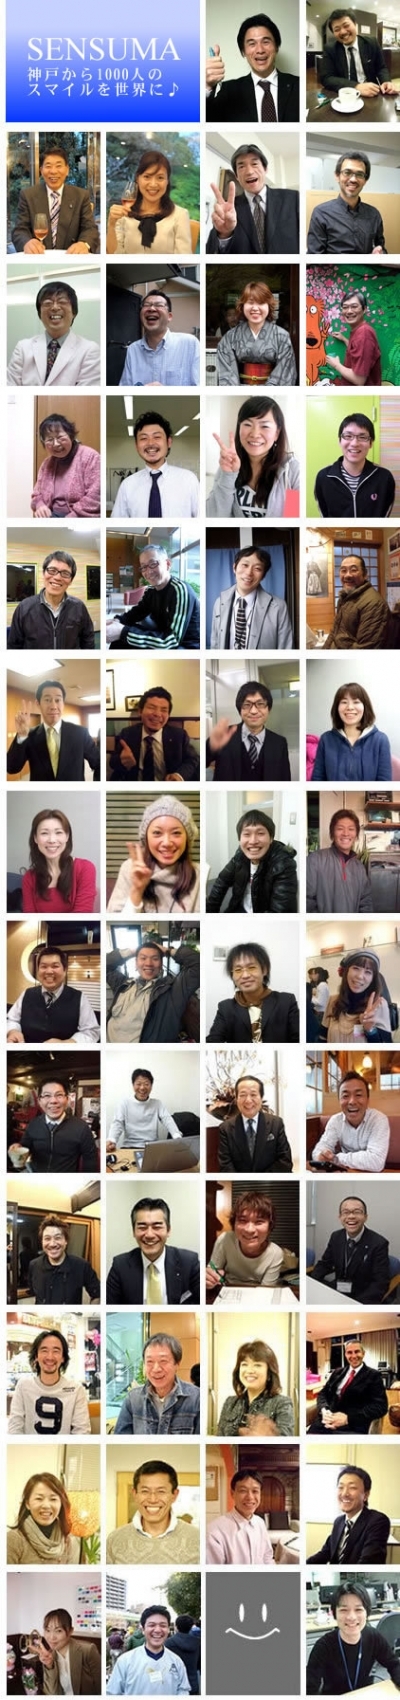 センスマプロジェクト（神戸から1000人の笑顔を届けるプロジェクト）